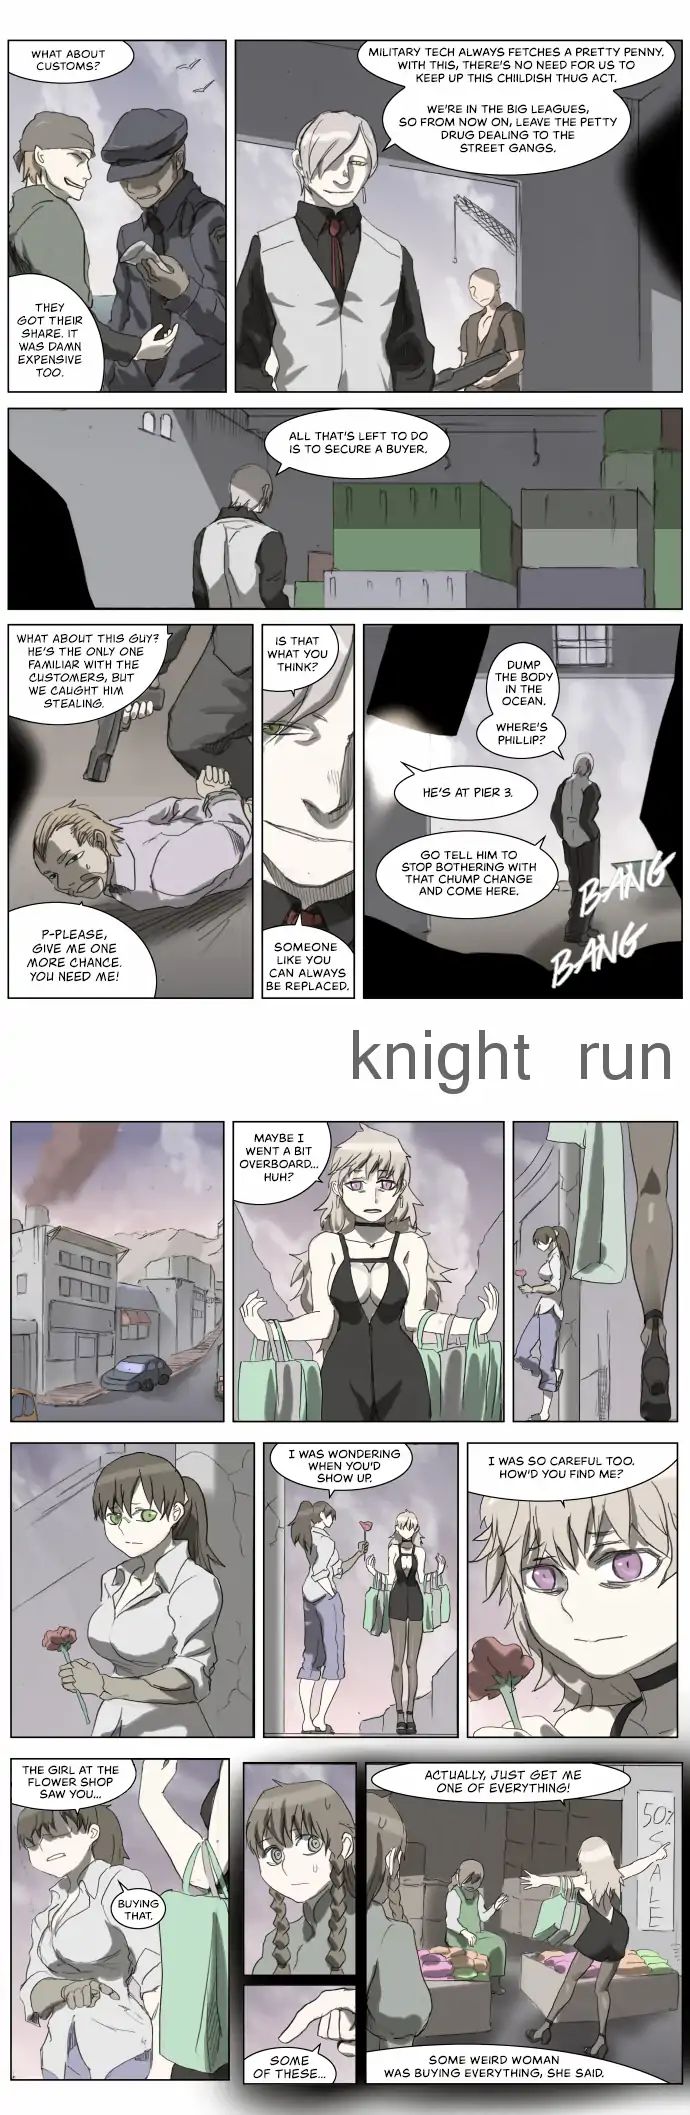 knight_run_177_1